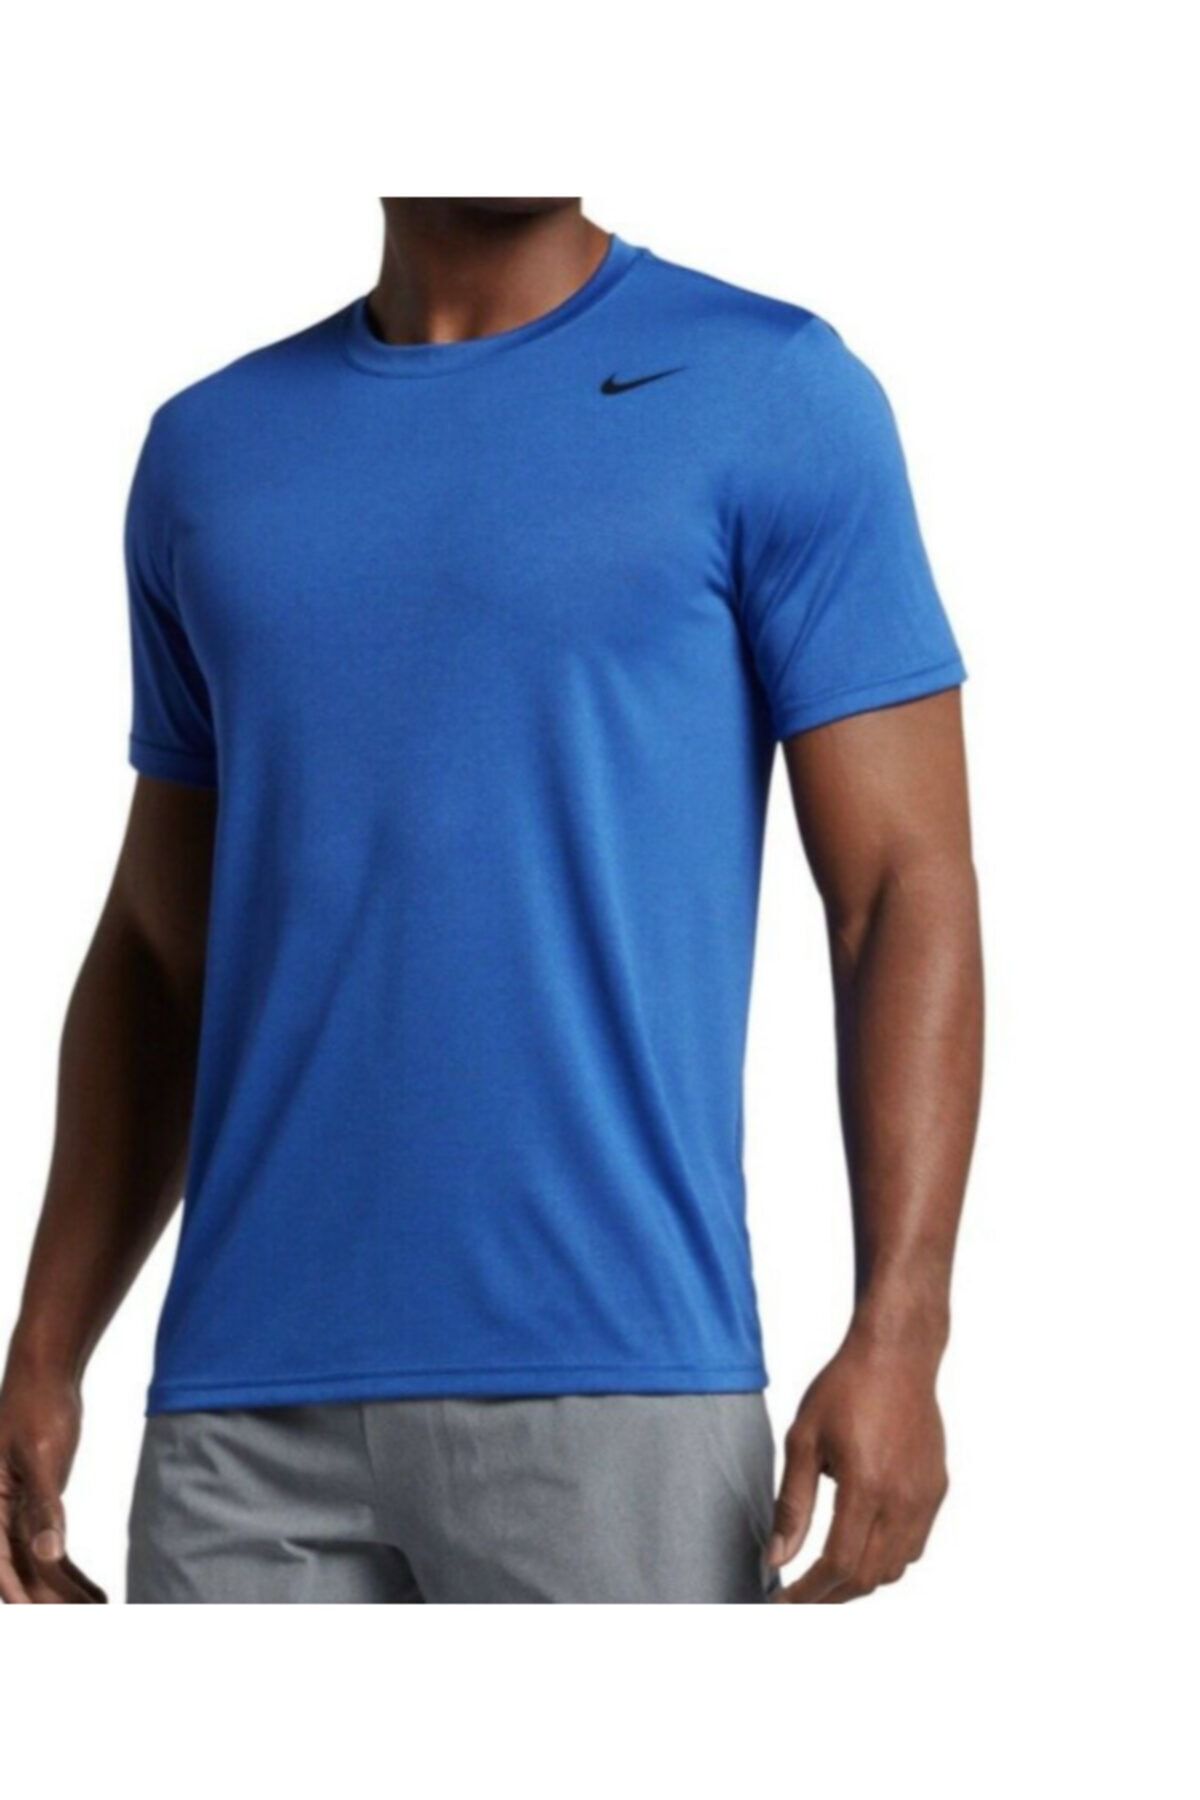 Nike Nıke Drı-fıt Legend 2.0 Shırt Erkek Tişört At3951-438